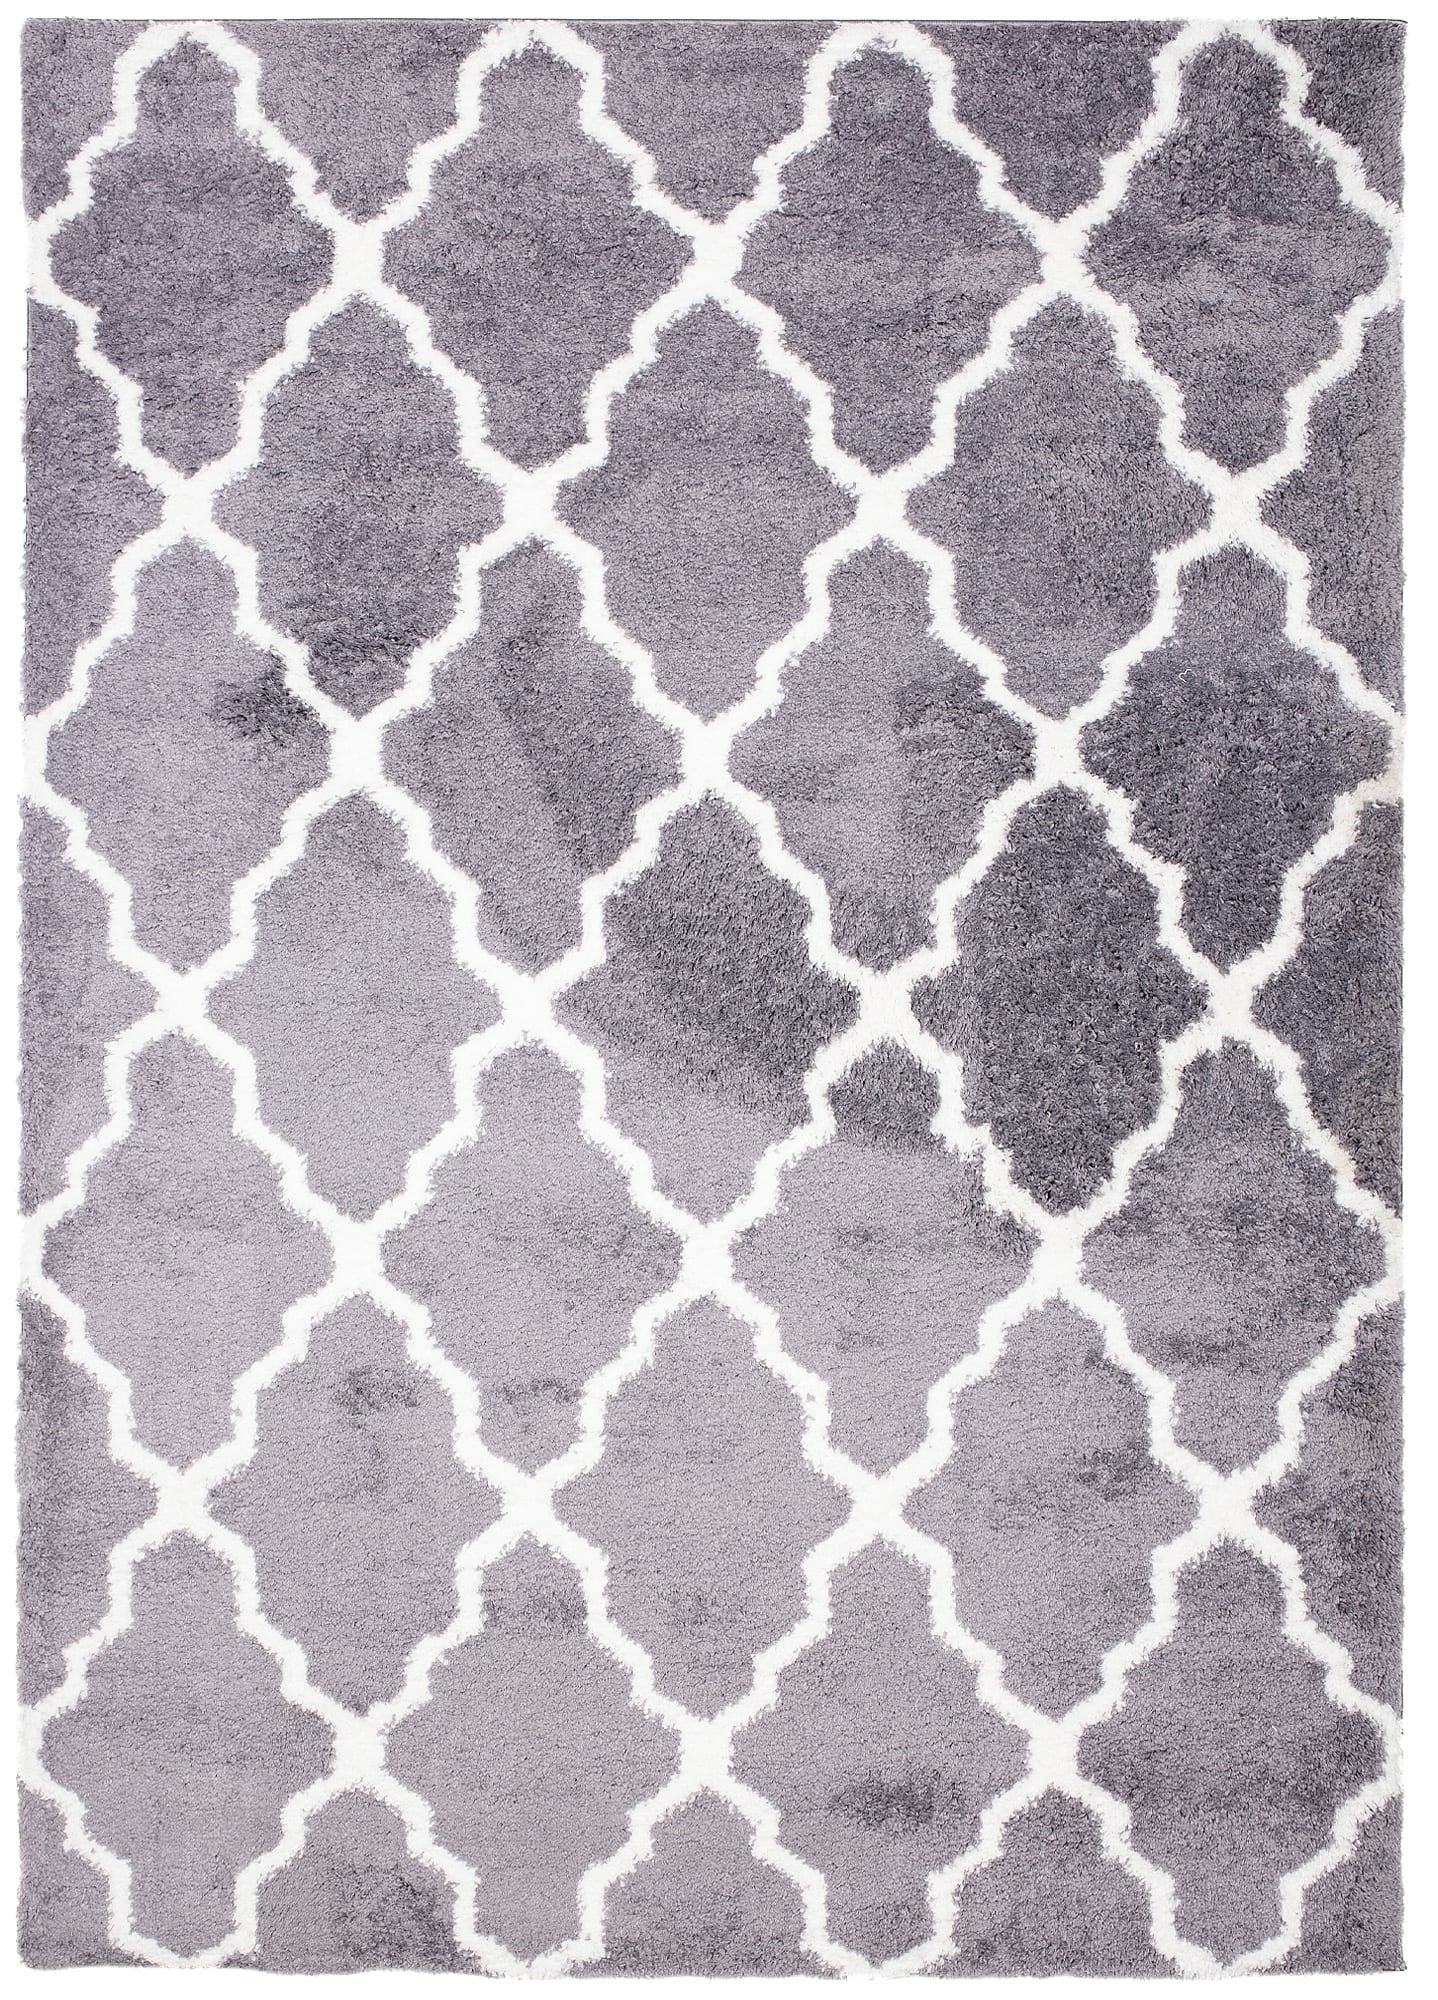 Tappeto shaggy grigio bianca geometrico 200 x 300 cm MODENA